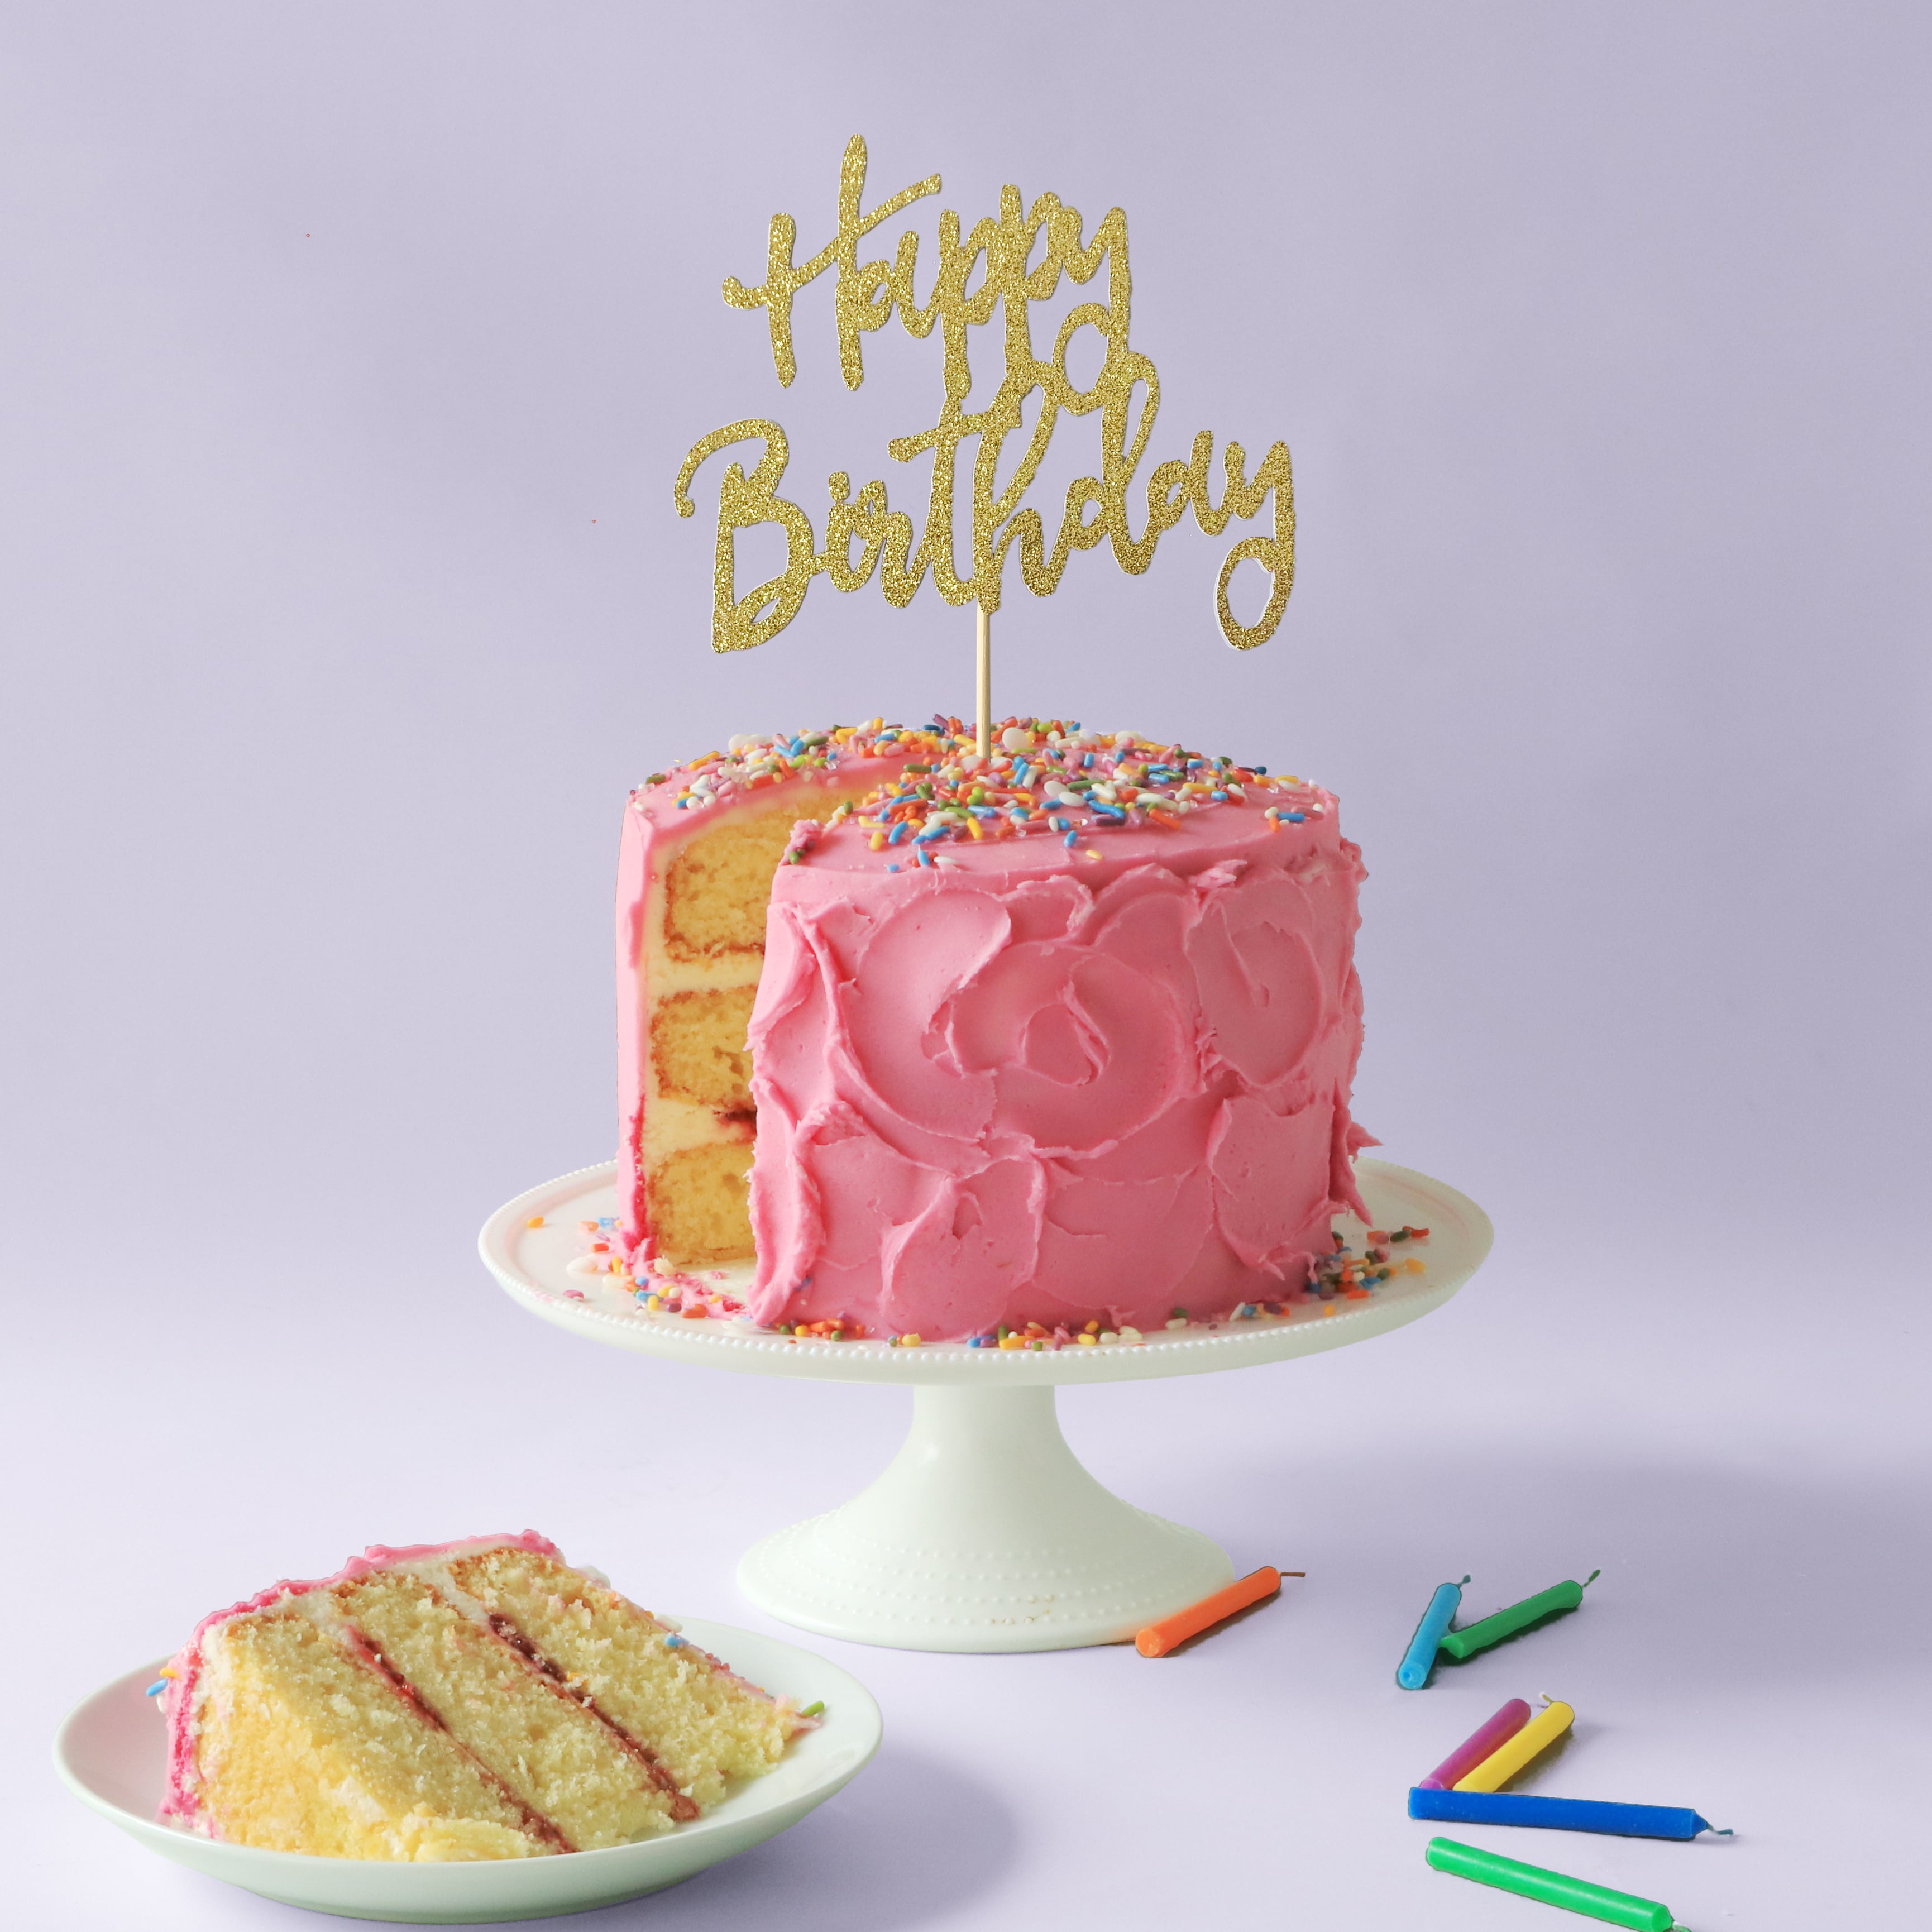 Happy Birthday Cake Topper - Birthday Cake Kits